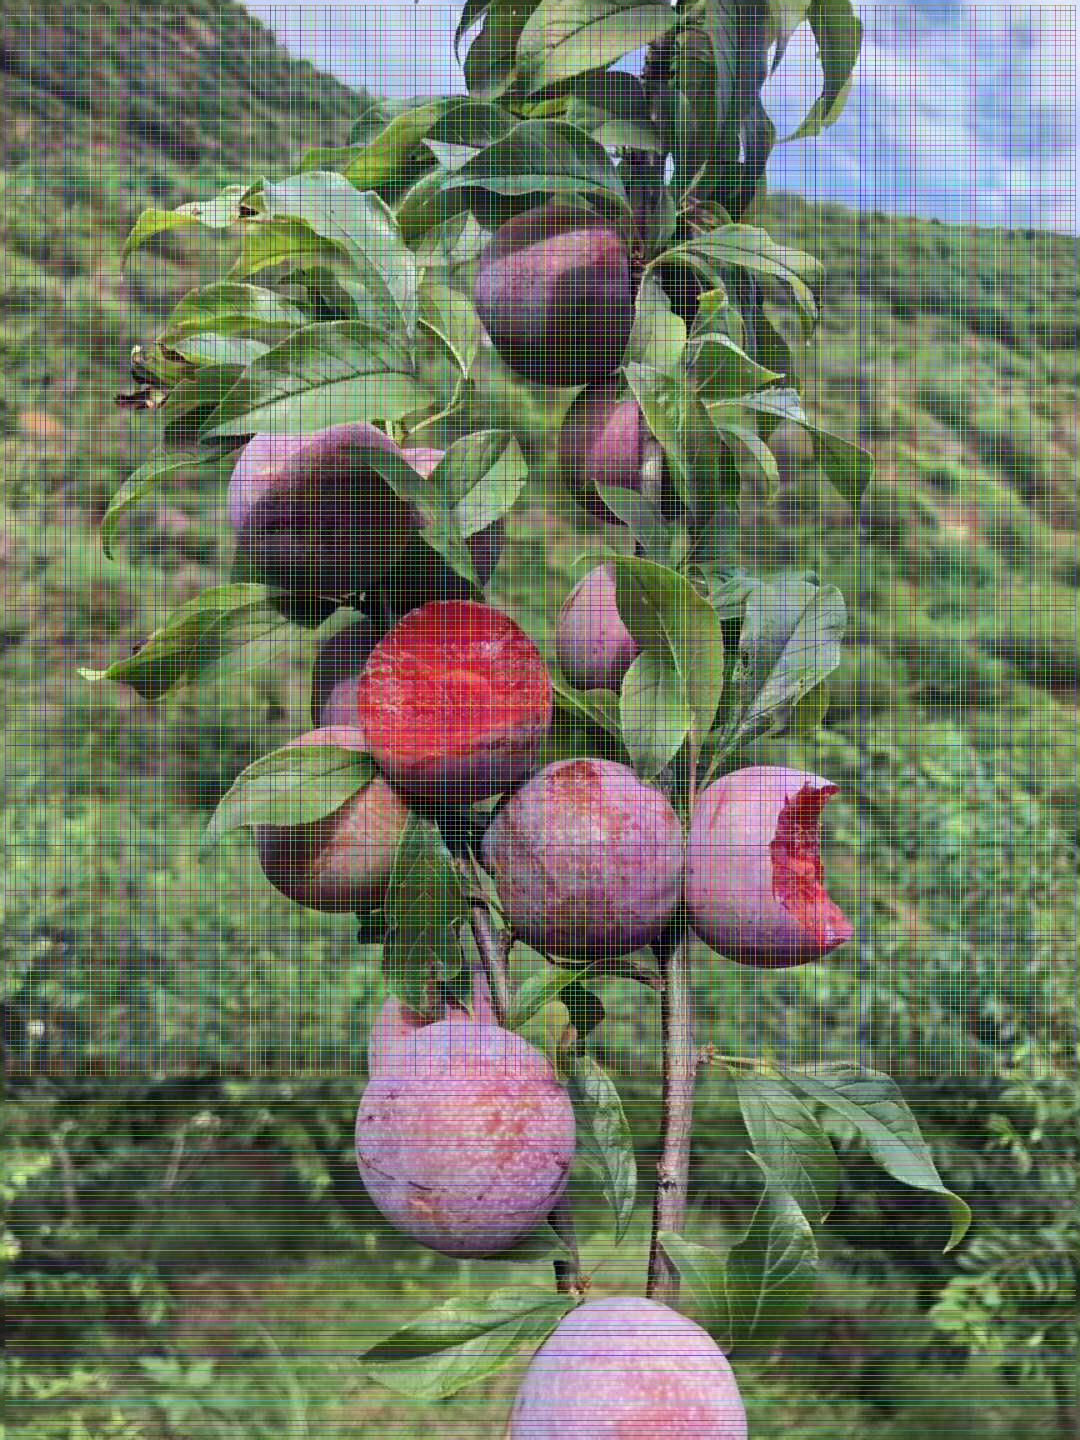 风味玫瑰杏李树苗 风味玫瑰杏李树苗适合大棚种植新品种